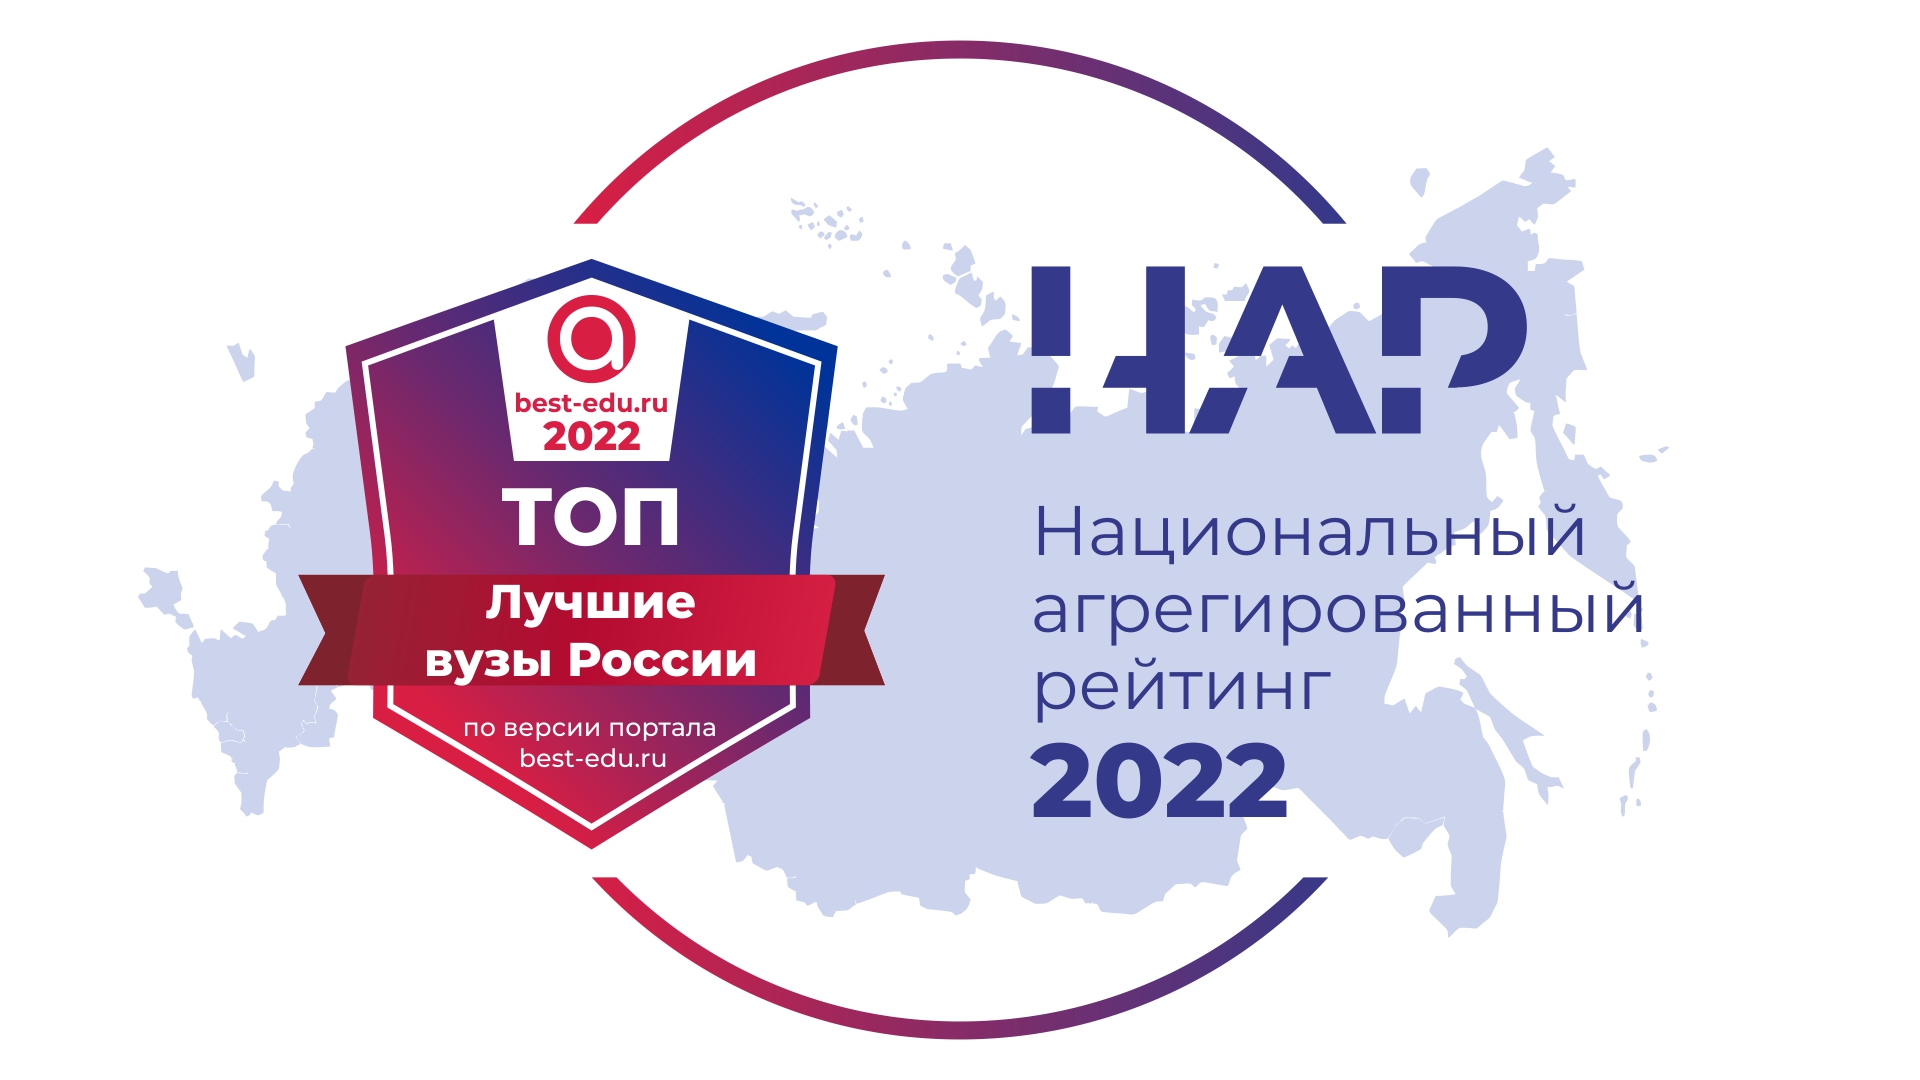 Кемеровский госуниверситет — лучший среди кузбасских вузов по результатам обнародованного Национального агрегированного рейтинга 2022 года